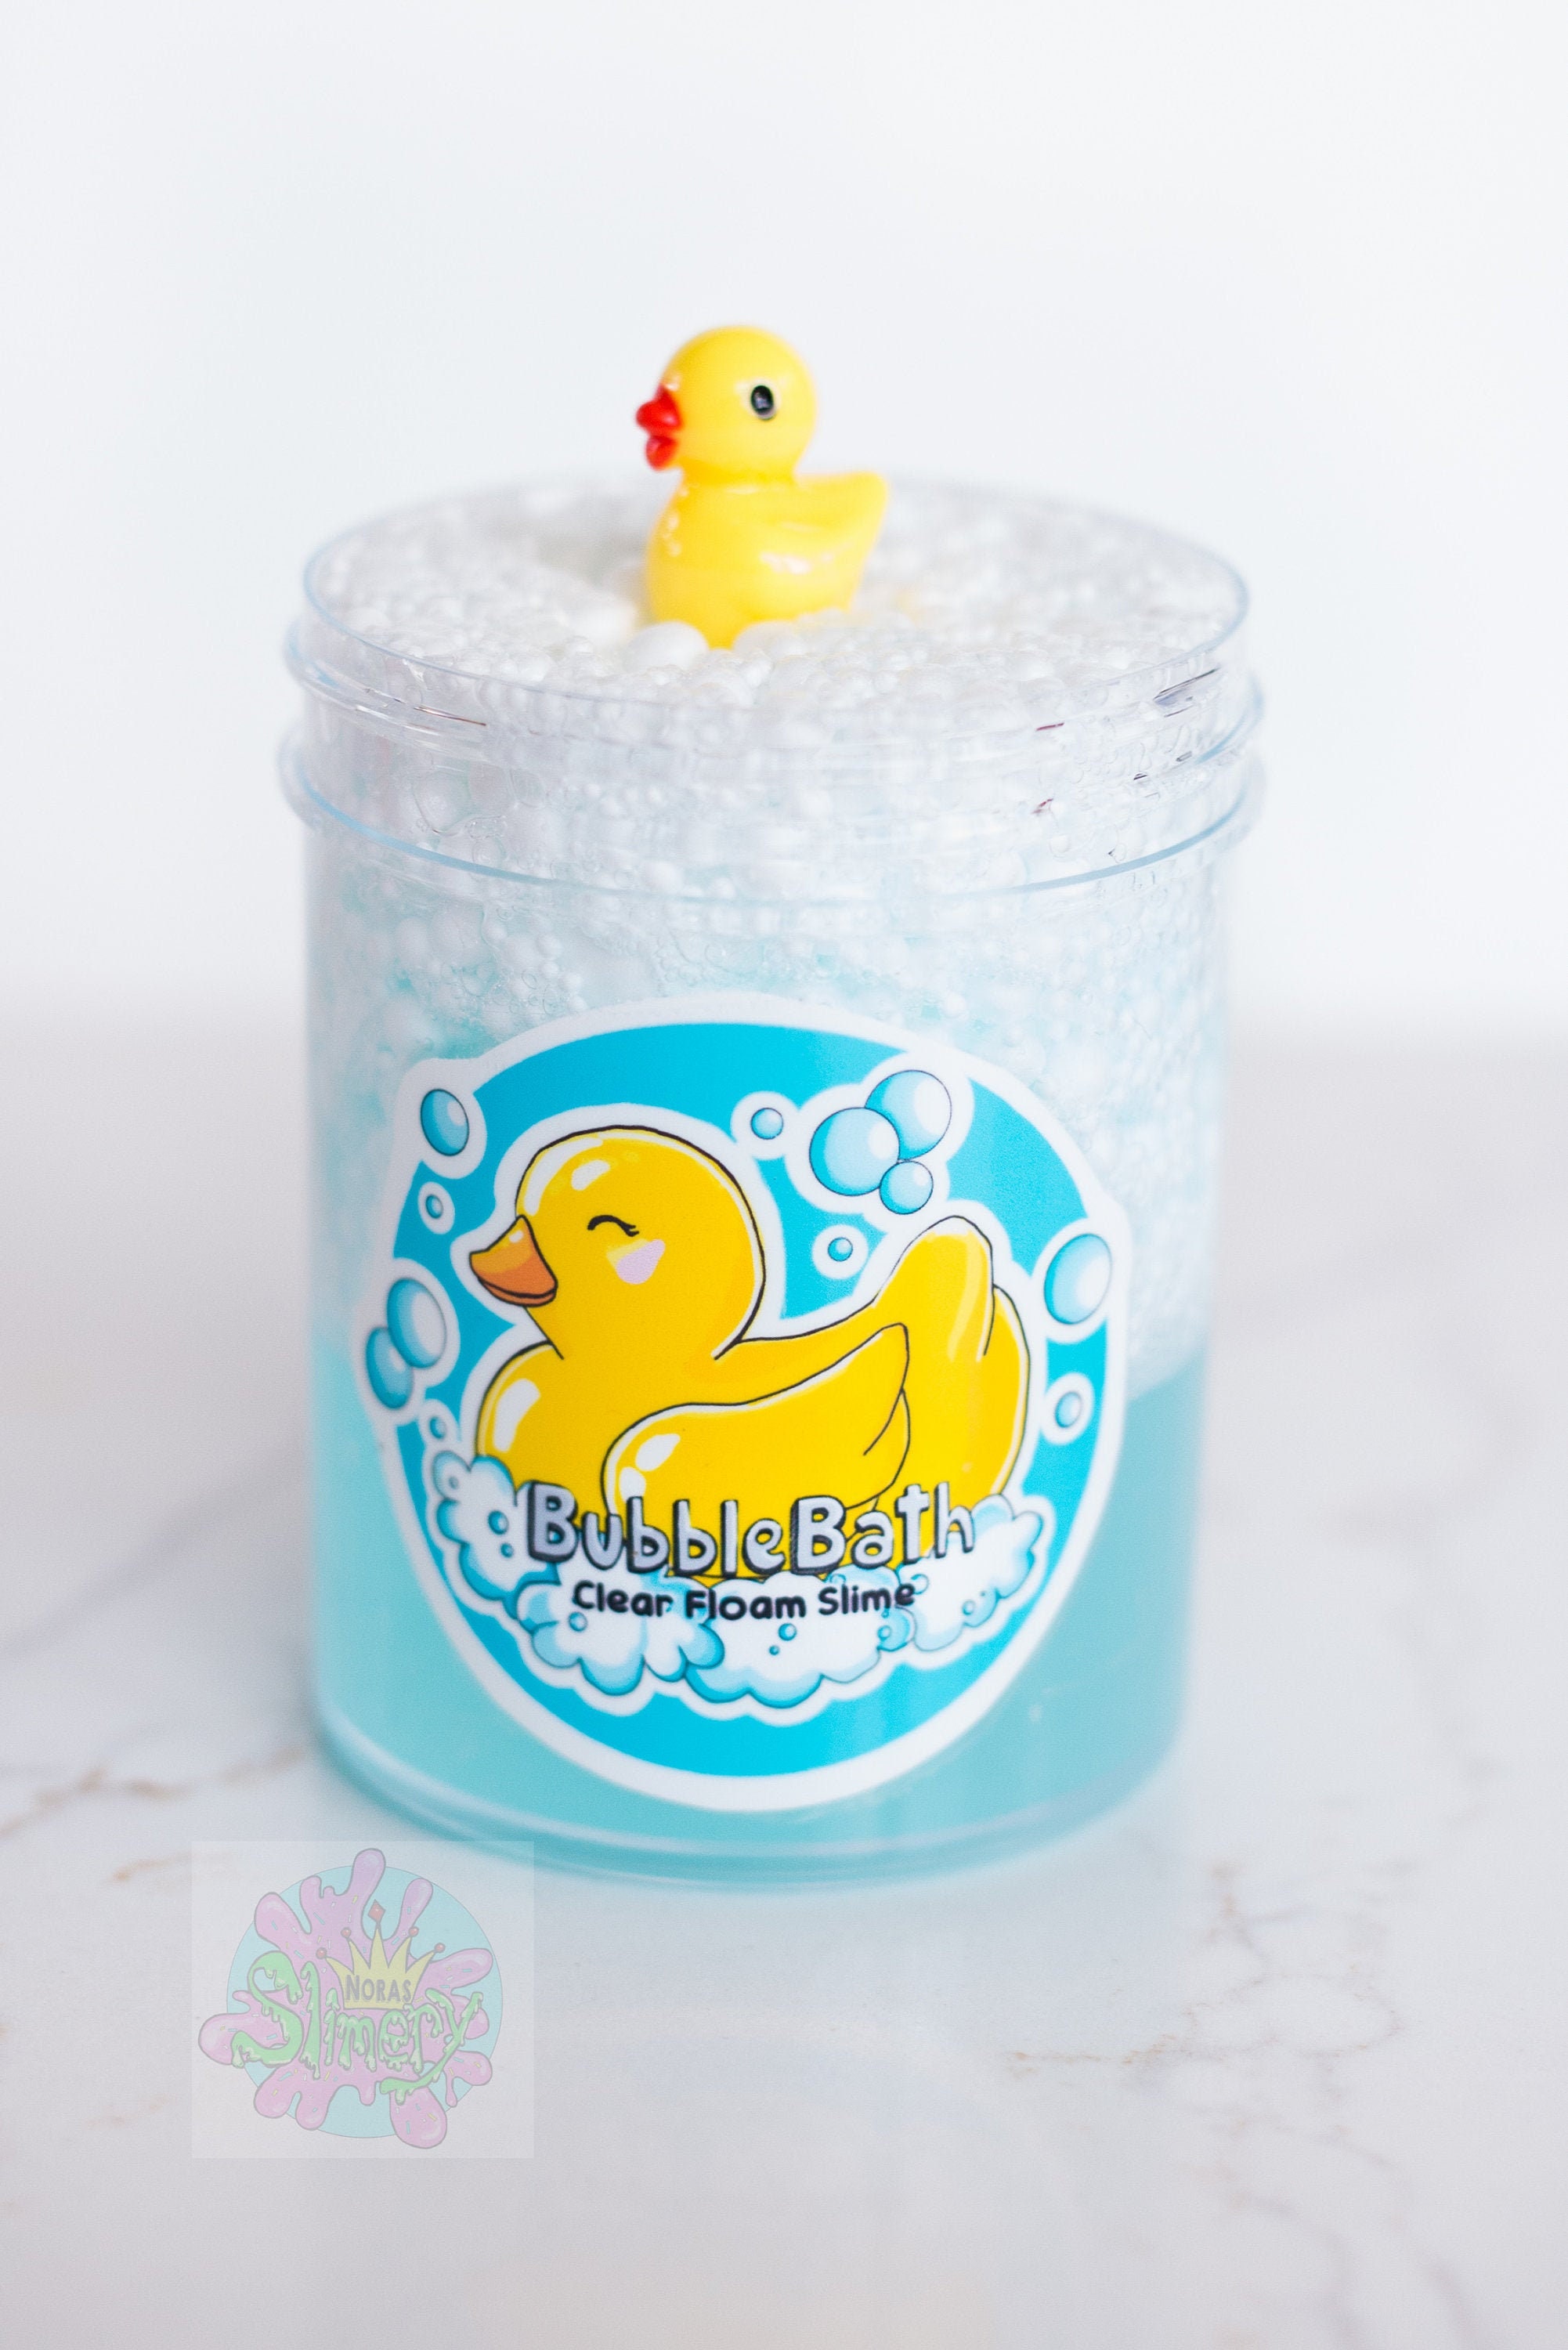 Rubber Duck & Slime Bubble Bath